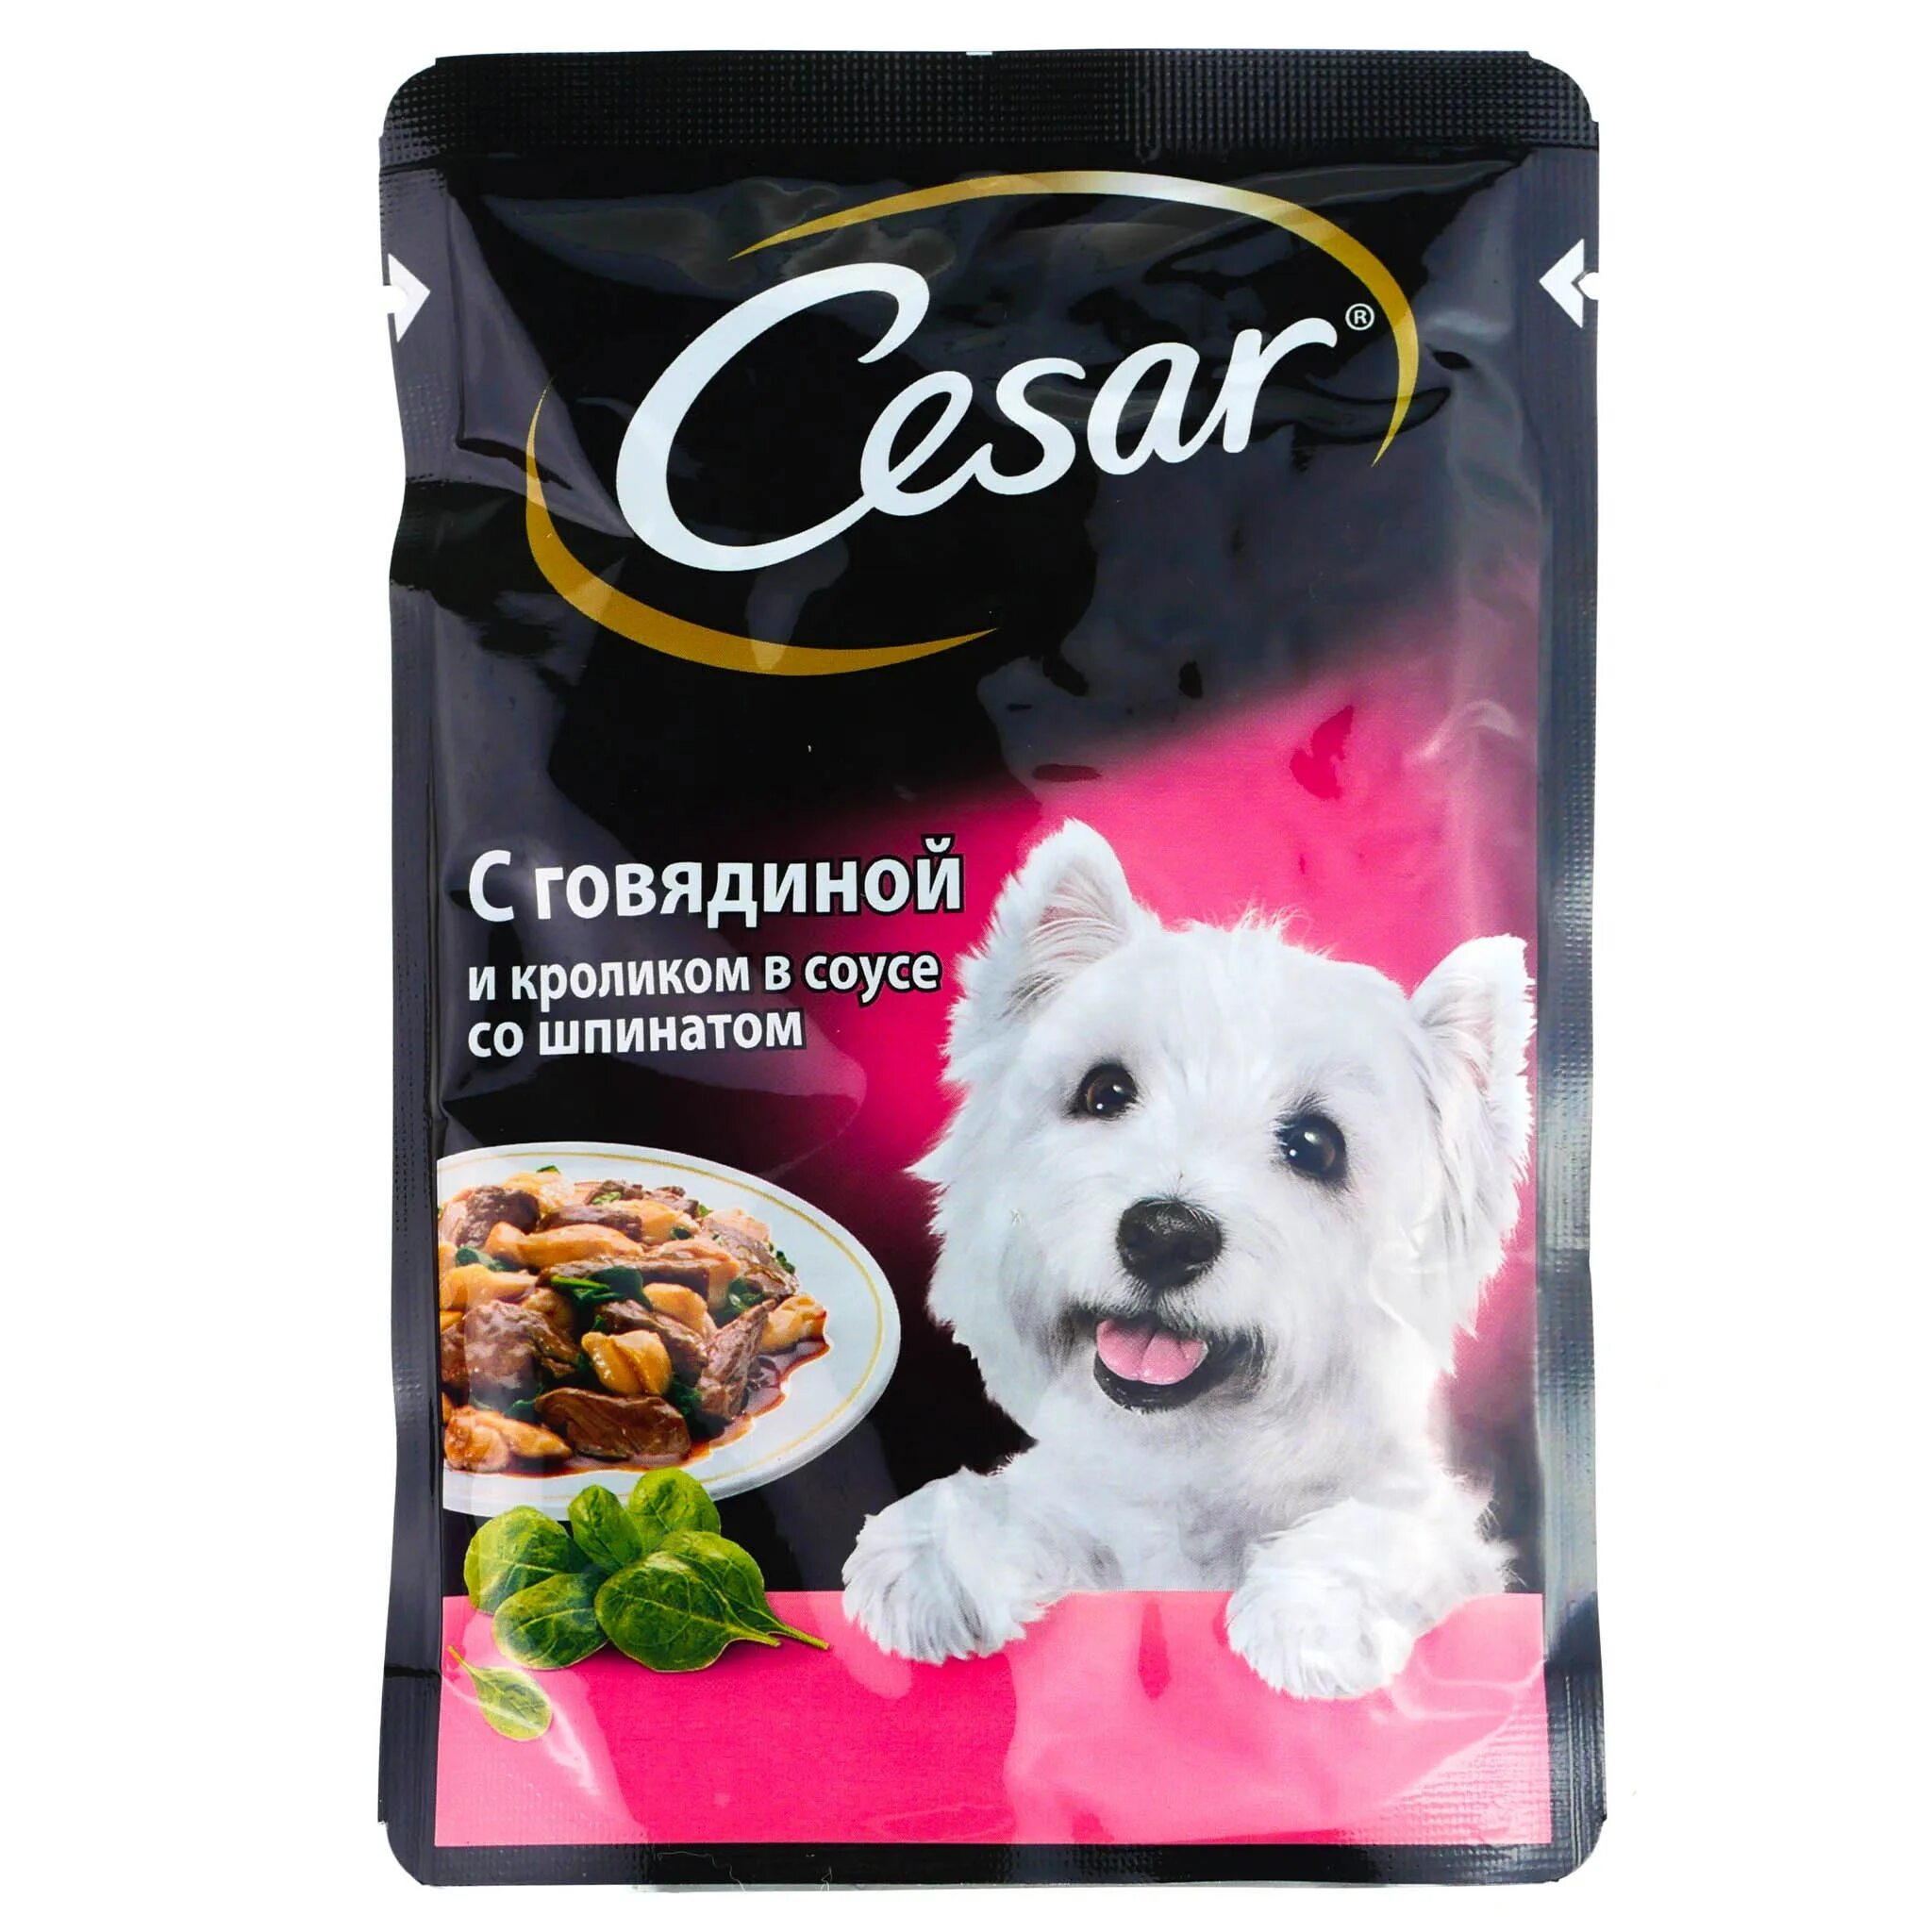 Мягкий корм для собак. Cesar корм для собак. Пакетики мягкого корма для собак.